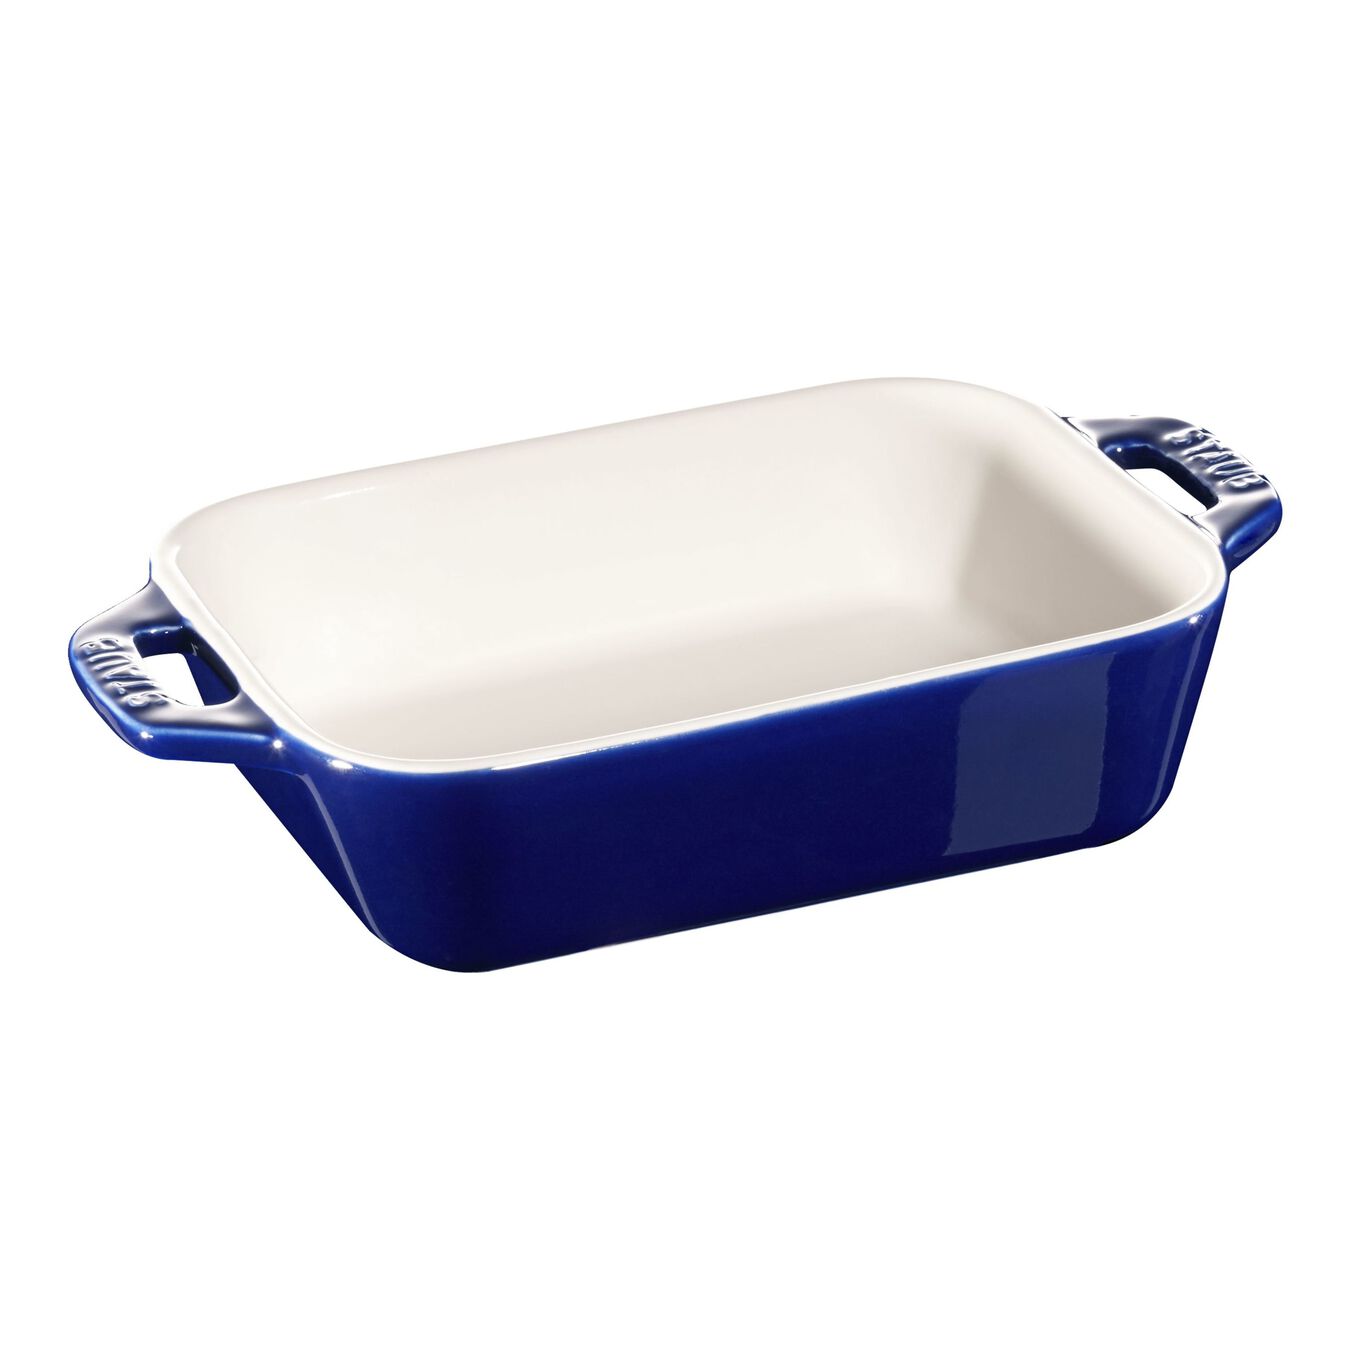 14 cm x 11 cm rectangular Ceramic Oven dish dark-blue,,large 1